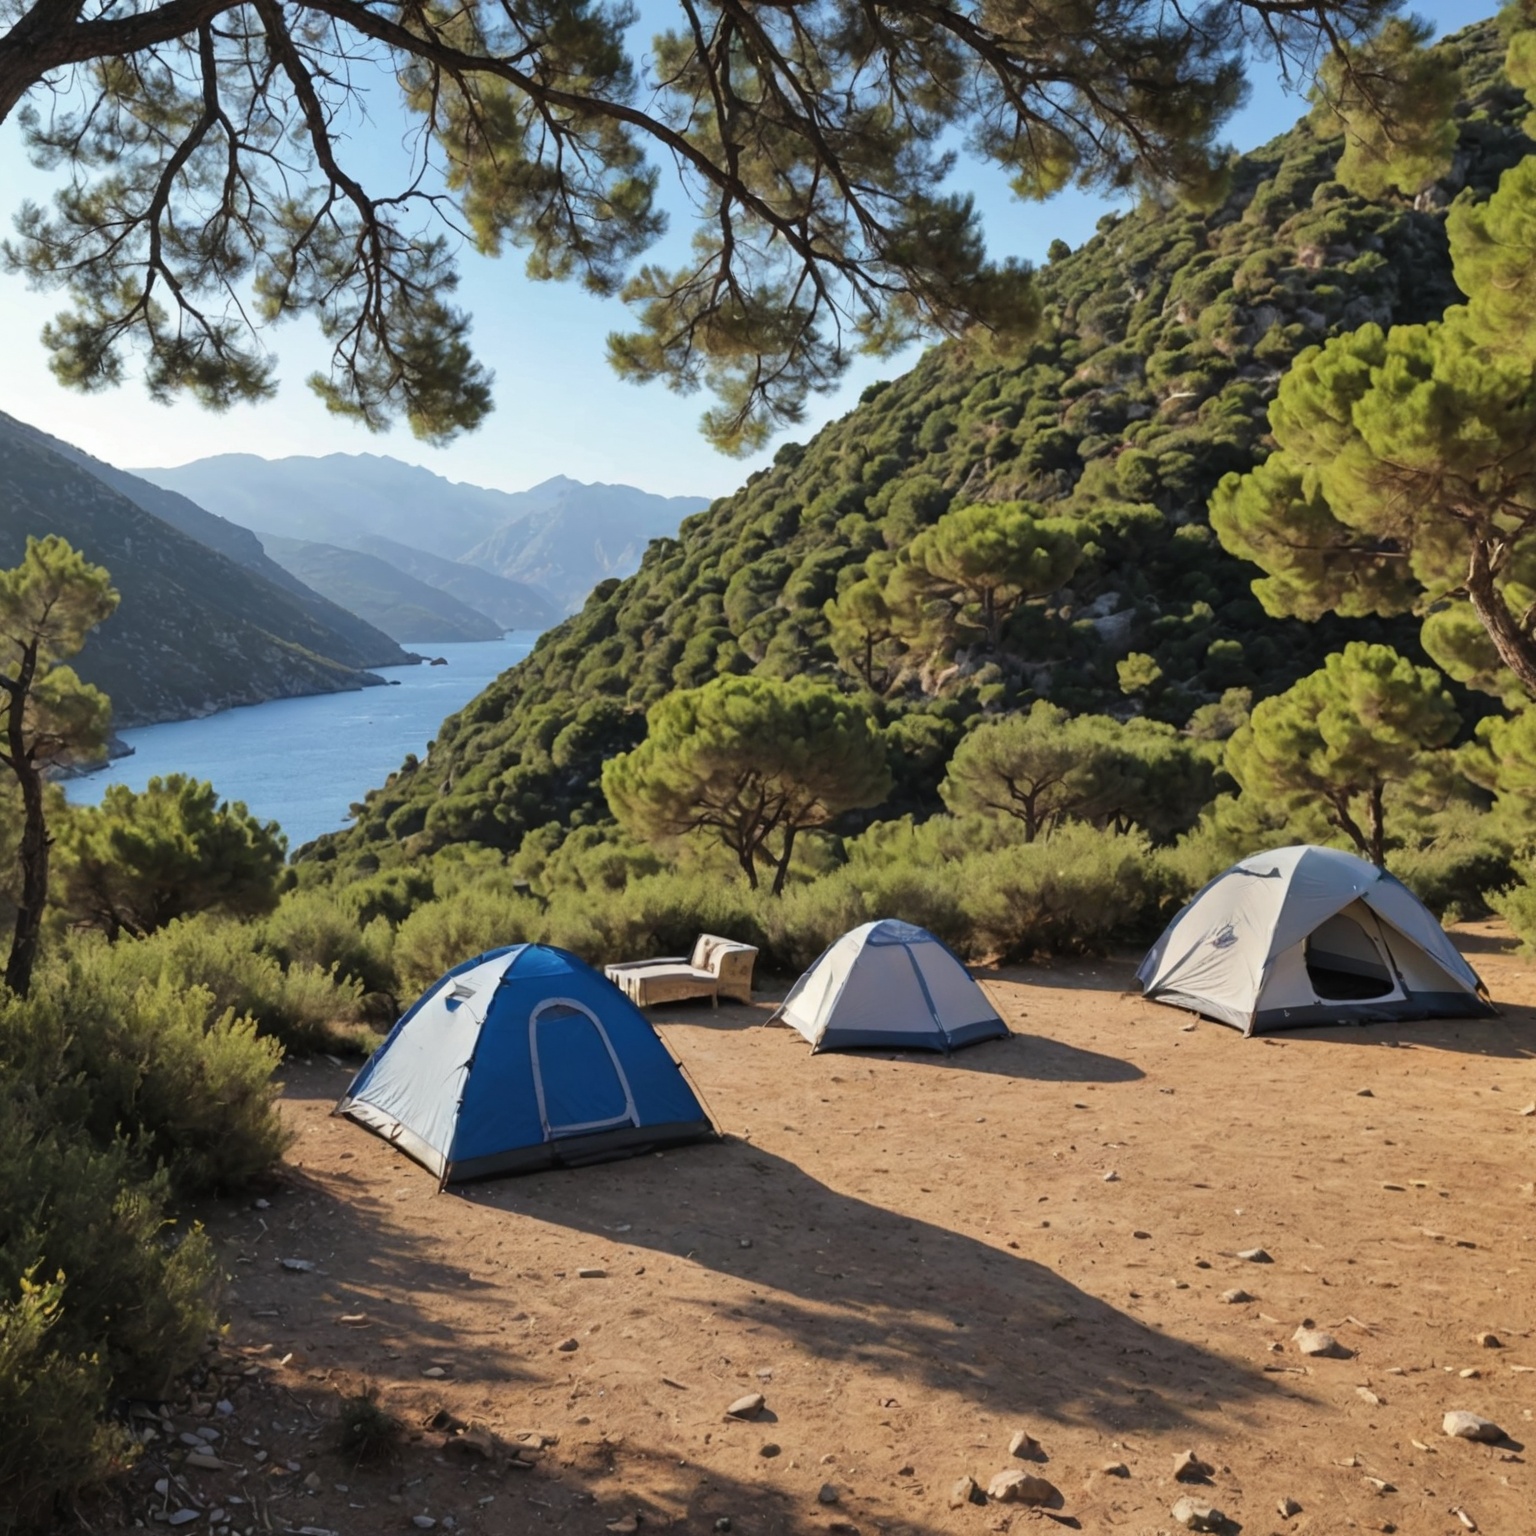 Trouver un Camping à Petit Prix en Corse: Guide pour des Vacances d’Été Économiques